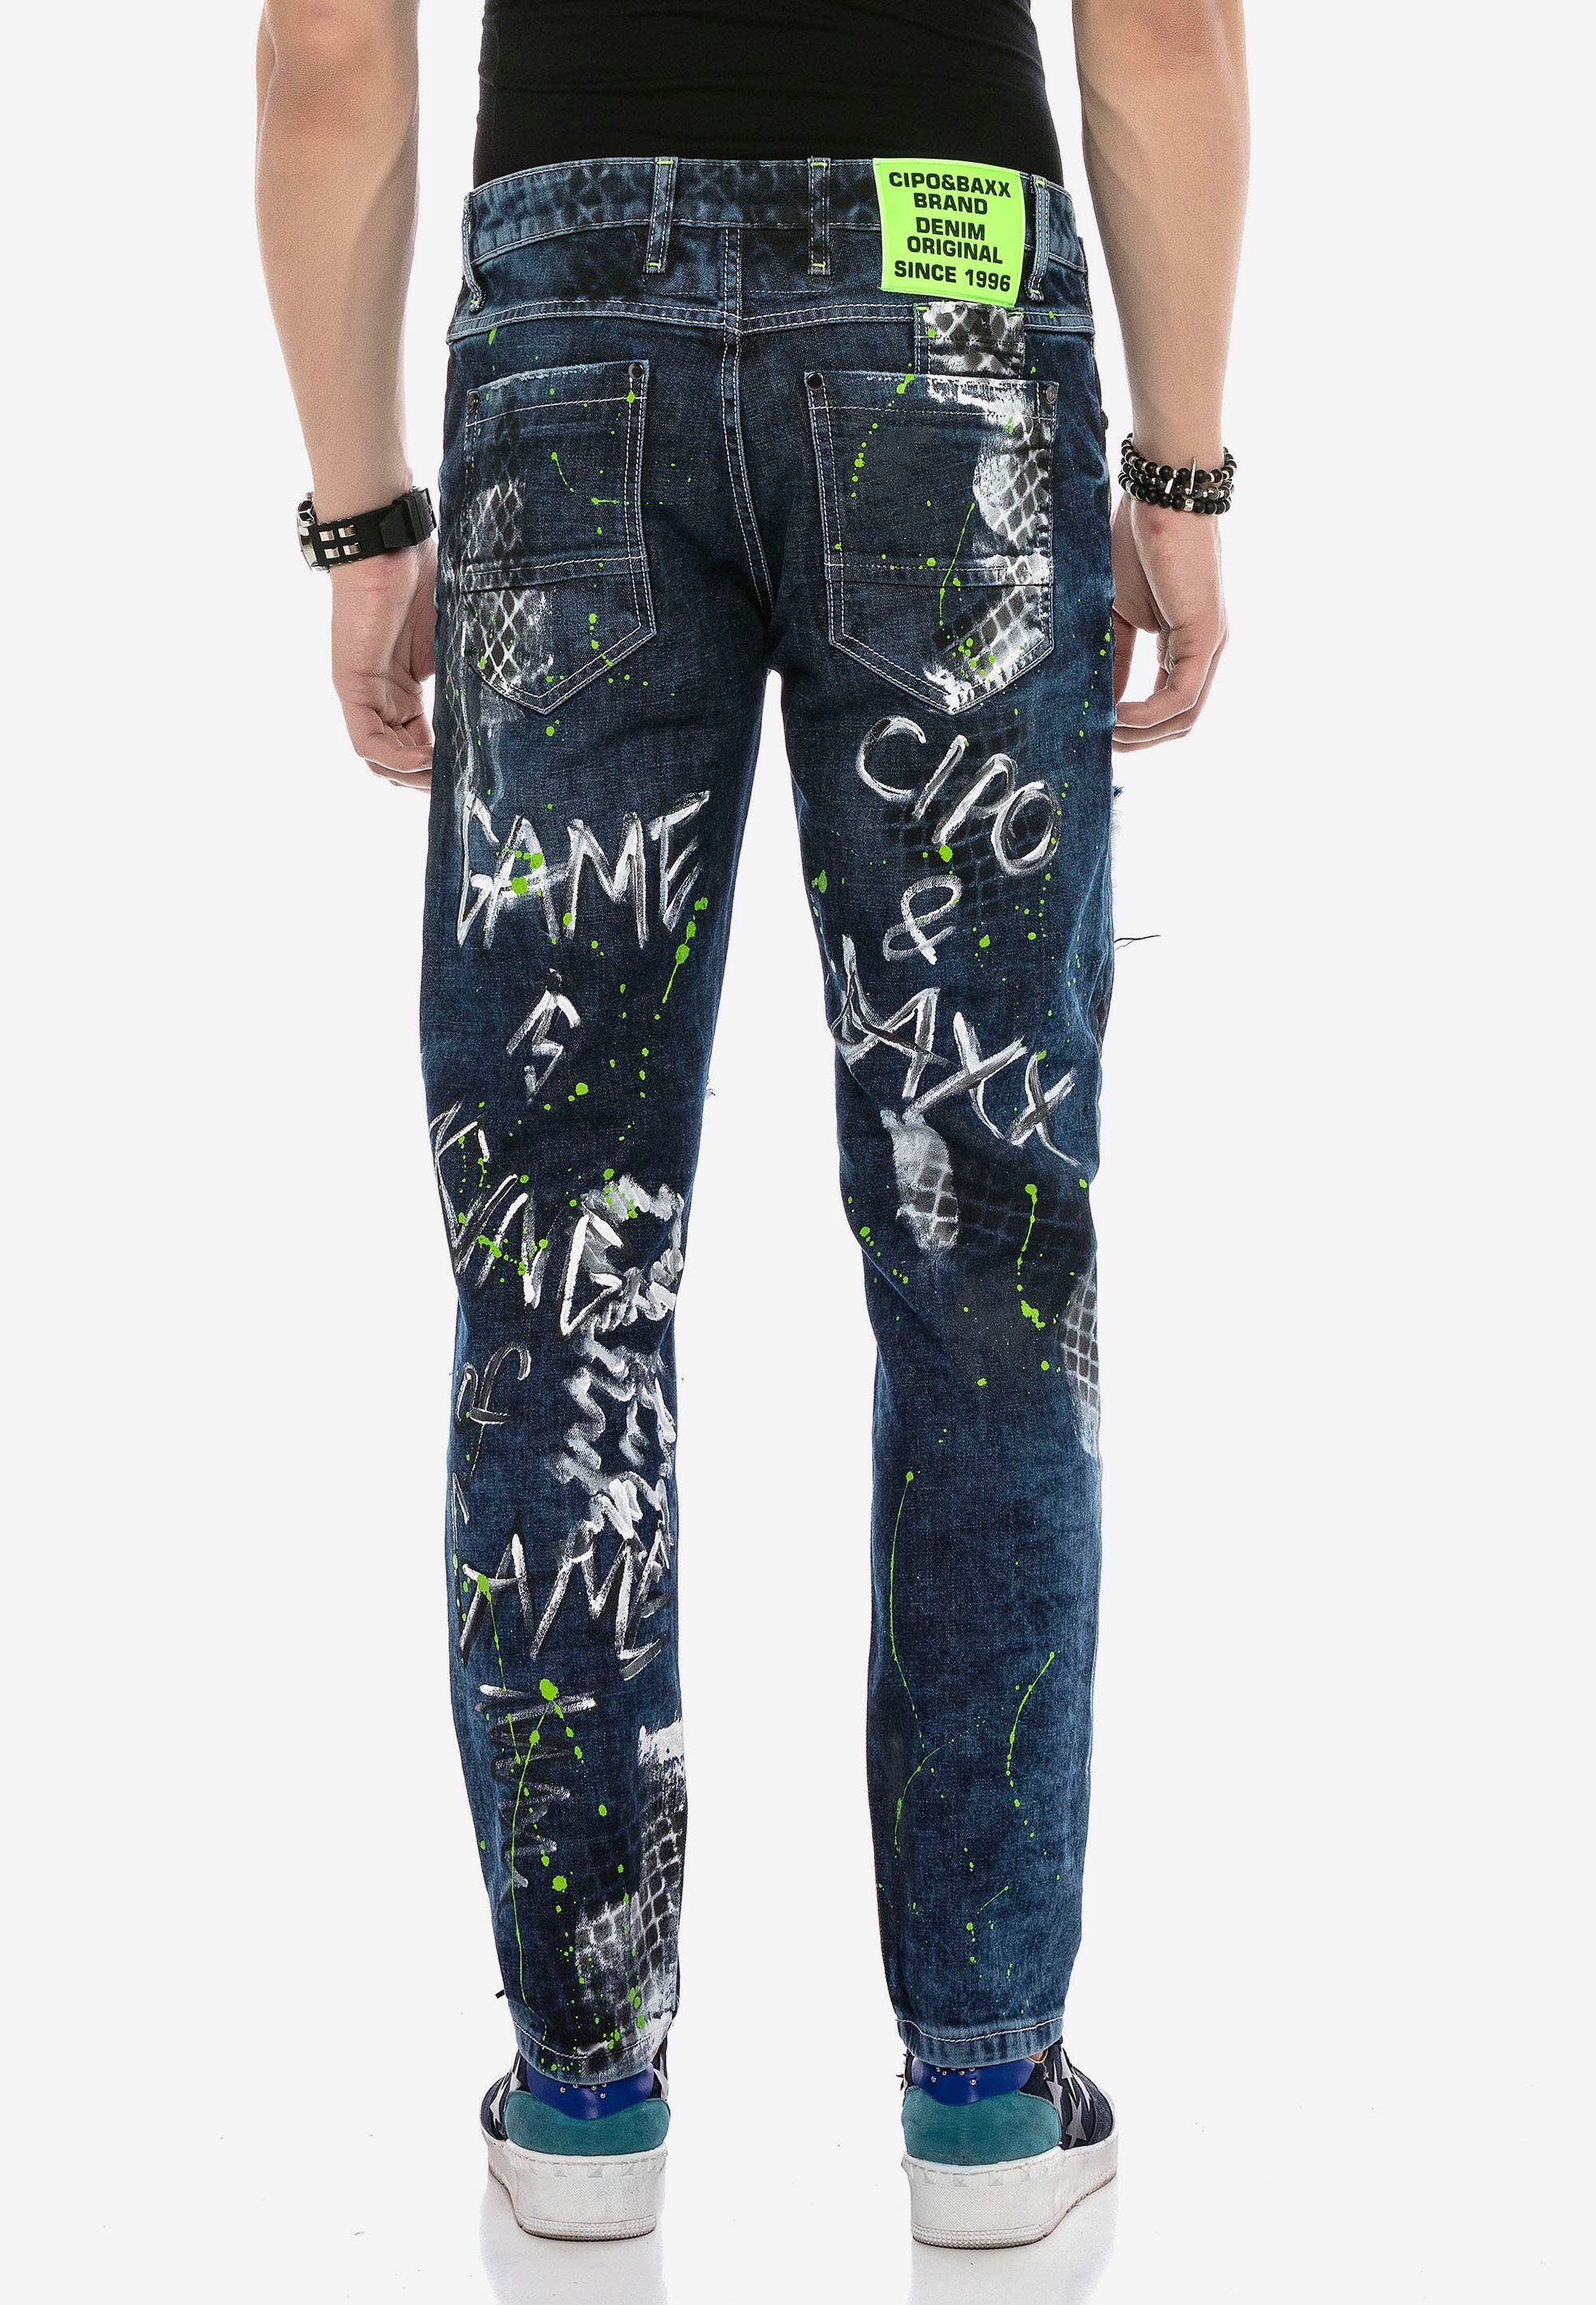 Jeans mit & Nieten Farbspritzern Baxx Cipo und Bequeme